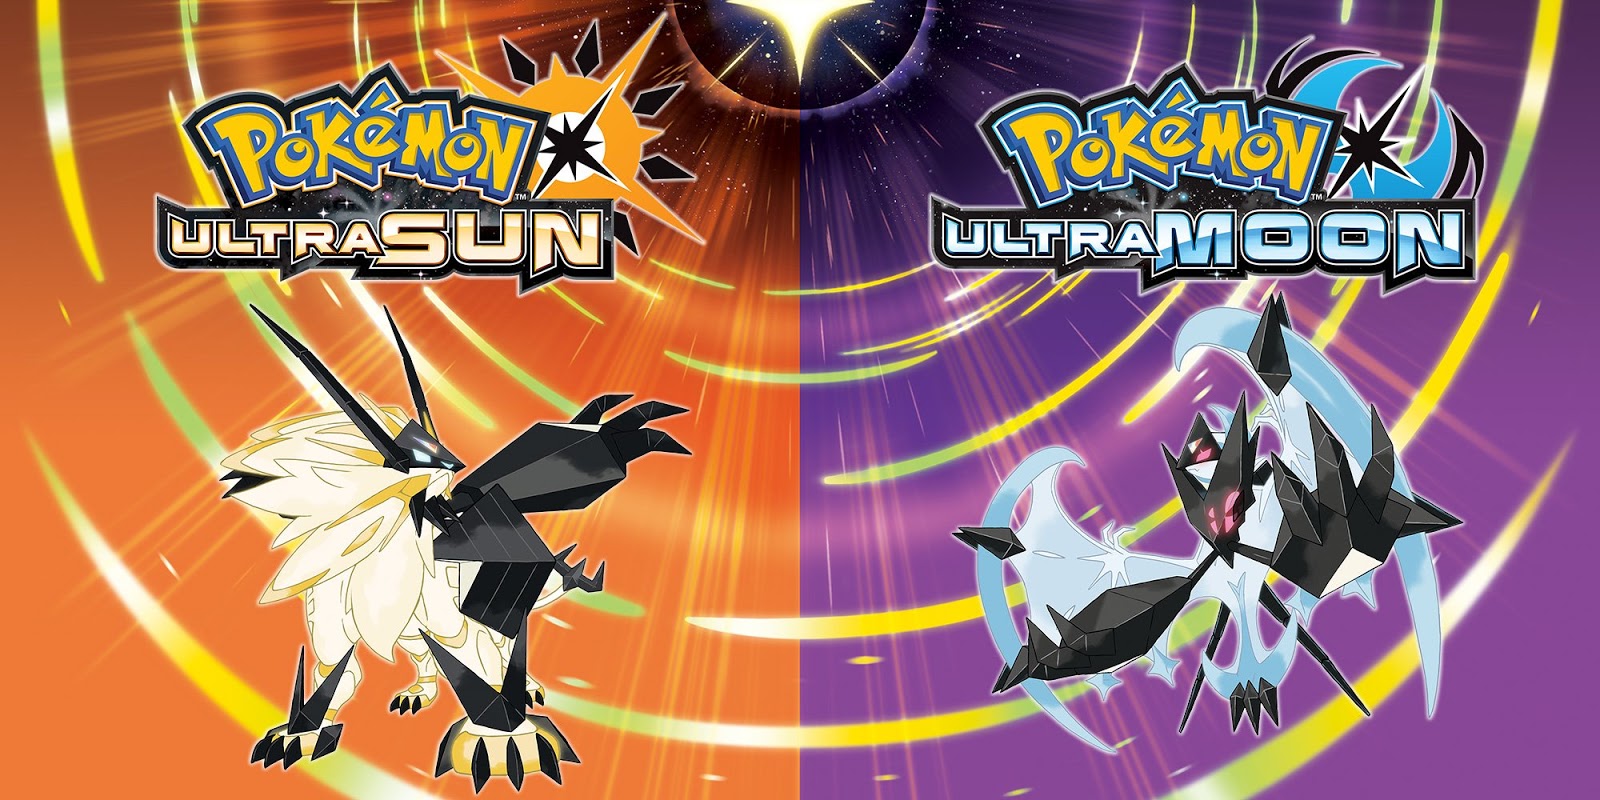 Novidades Pokémon Ultra Sun e Ultra Moon!